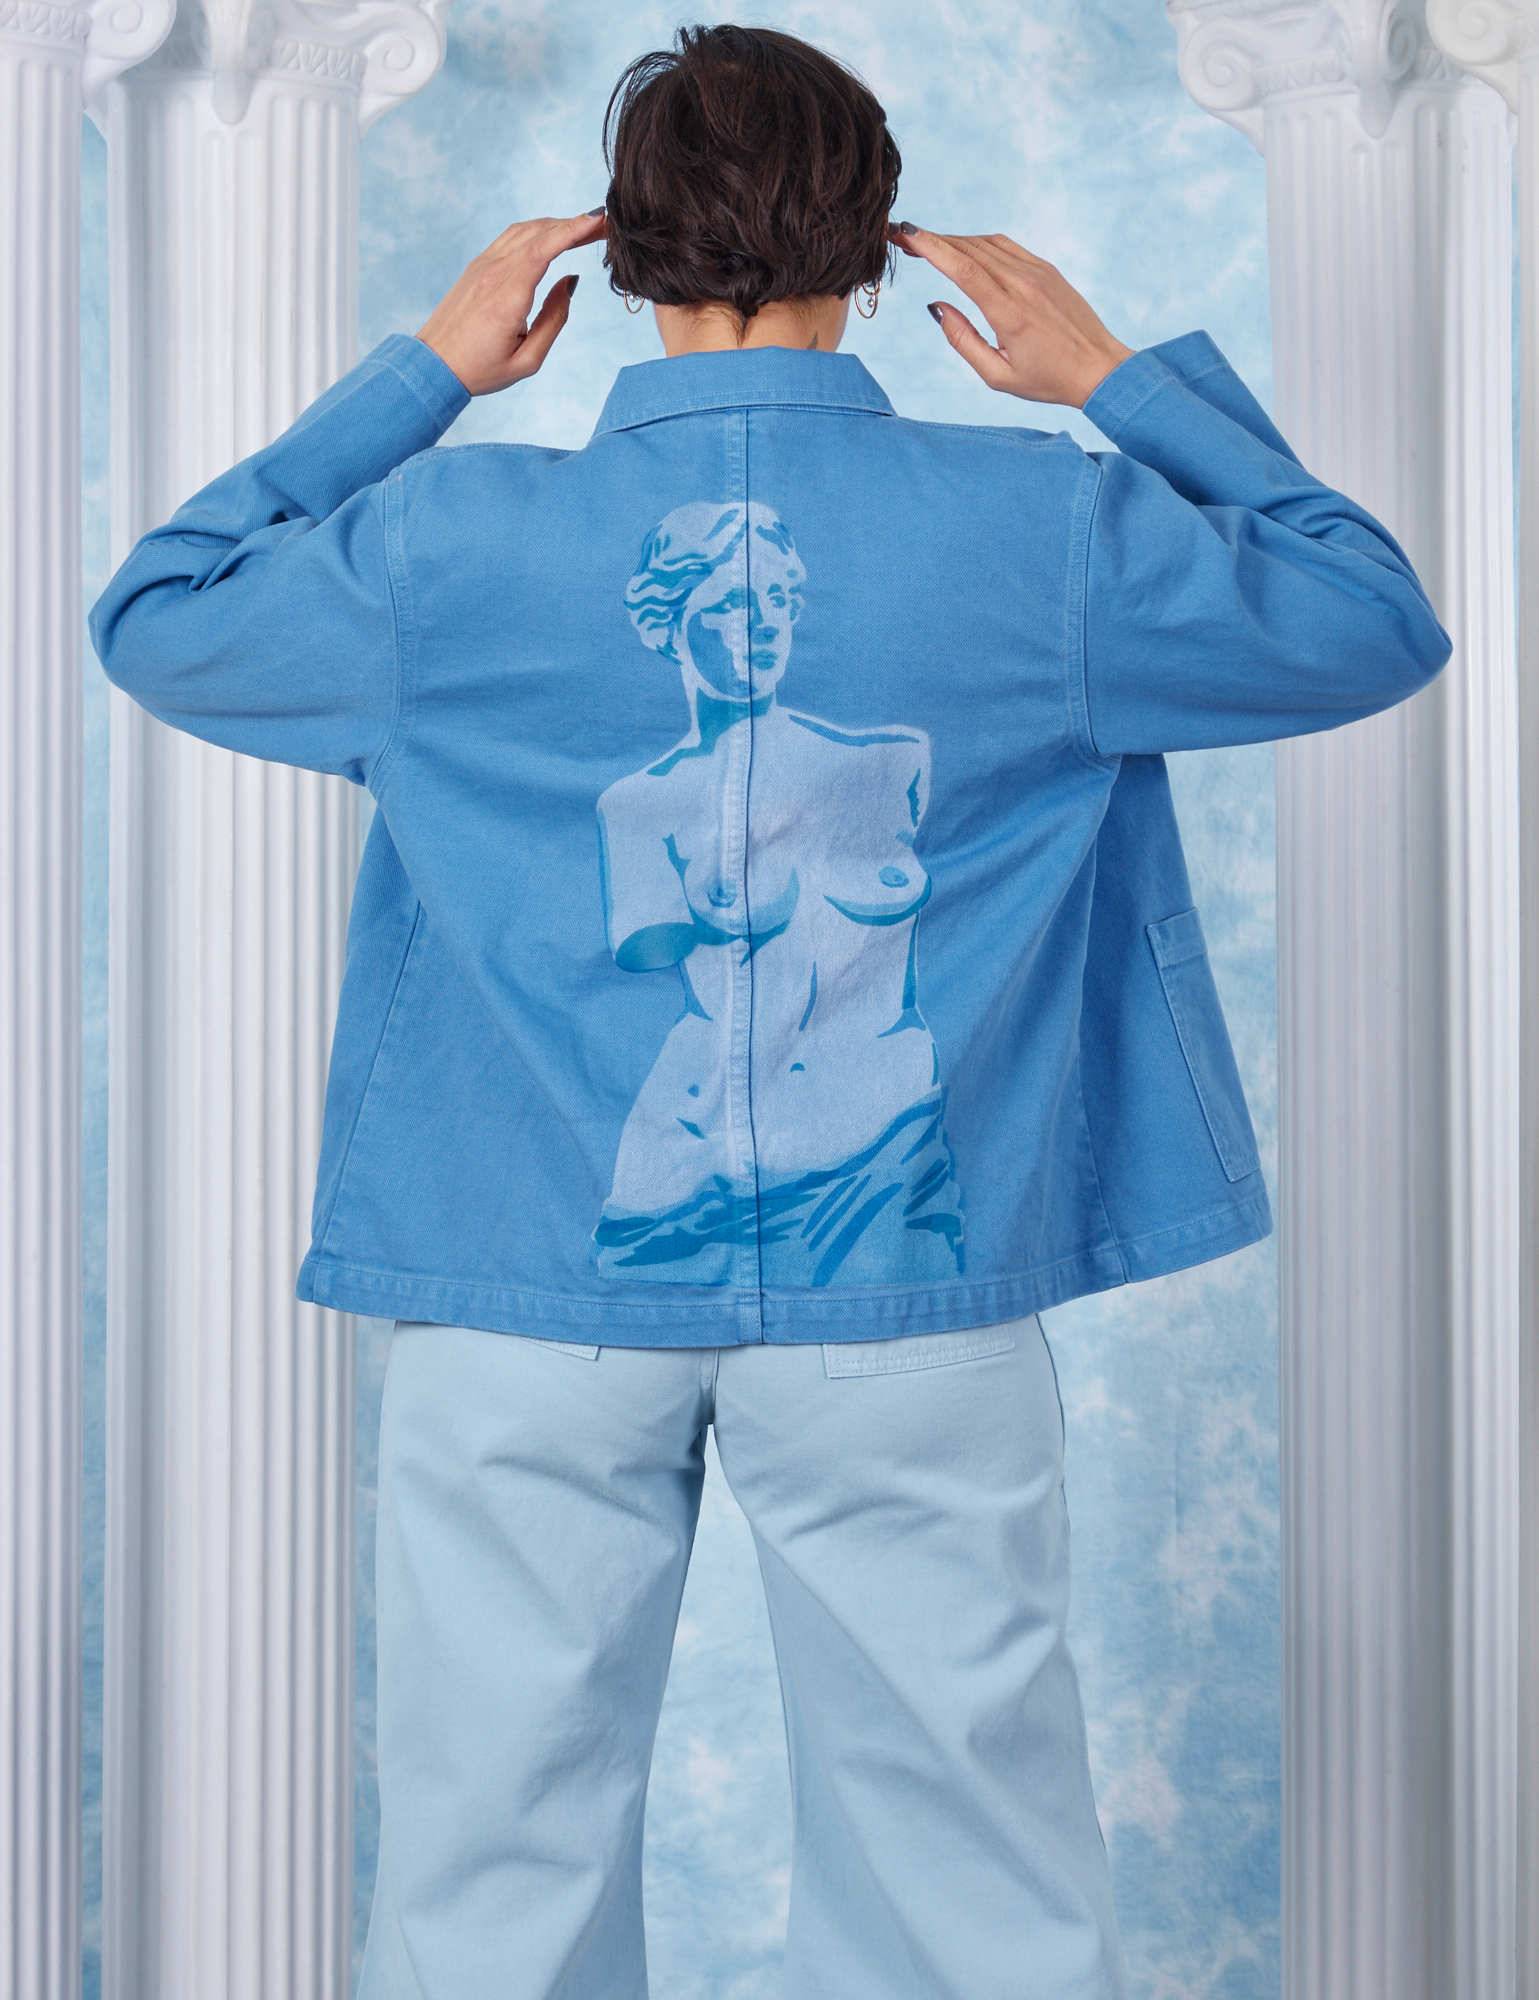 Tiara wearing XS Neoclassical Work Jacket in Blue Venus back view